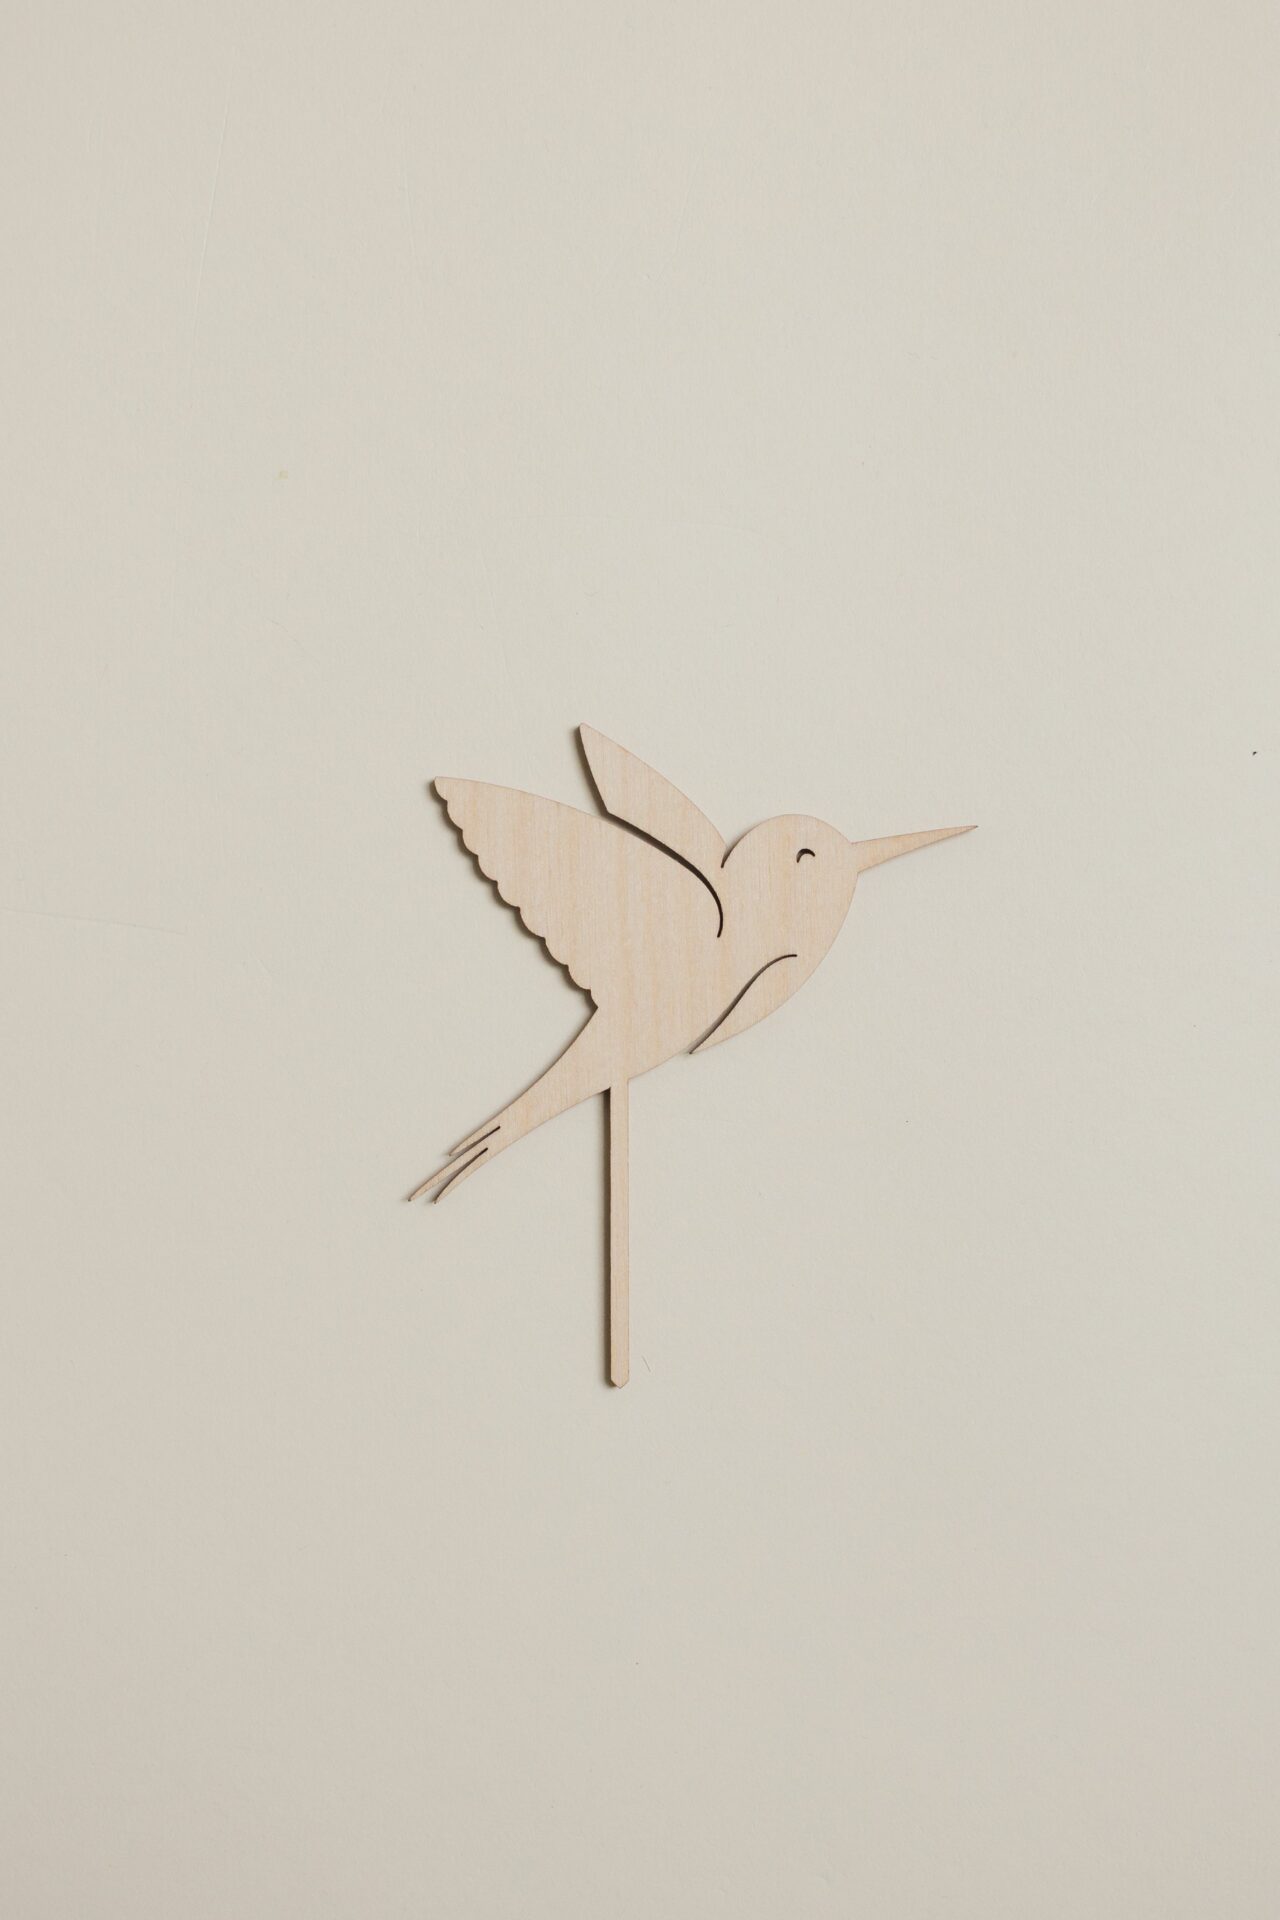 Kolibri Stecker für den Geburtstagskranz aus Holz als Tischdekoration.